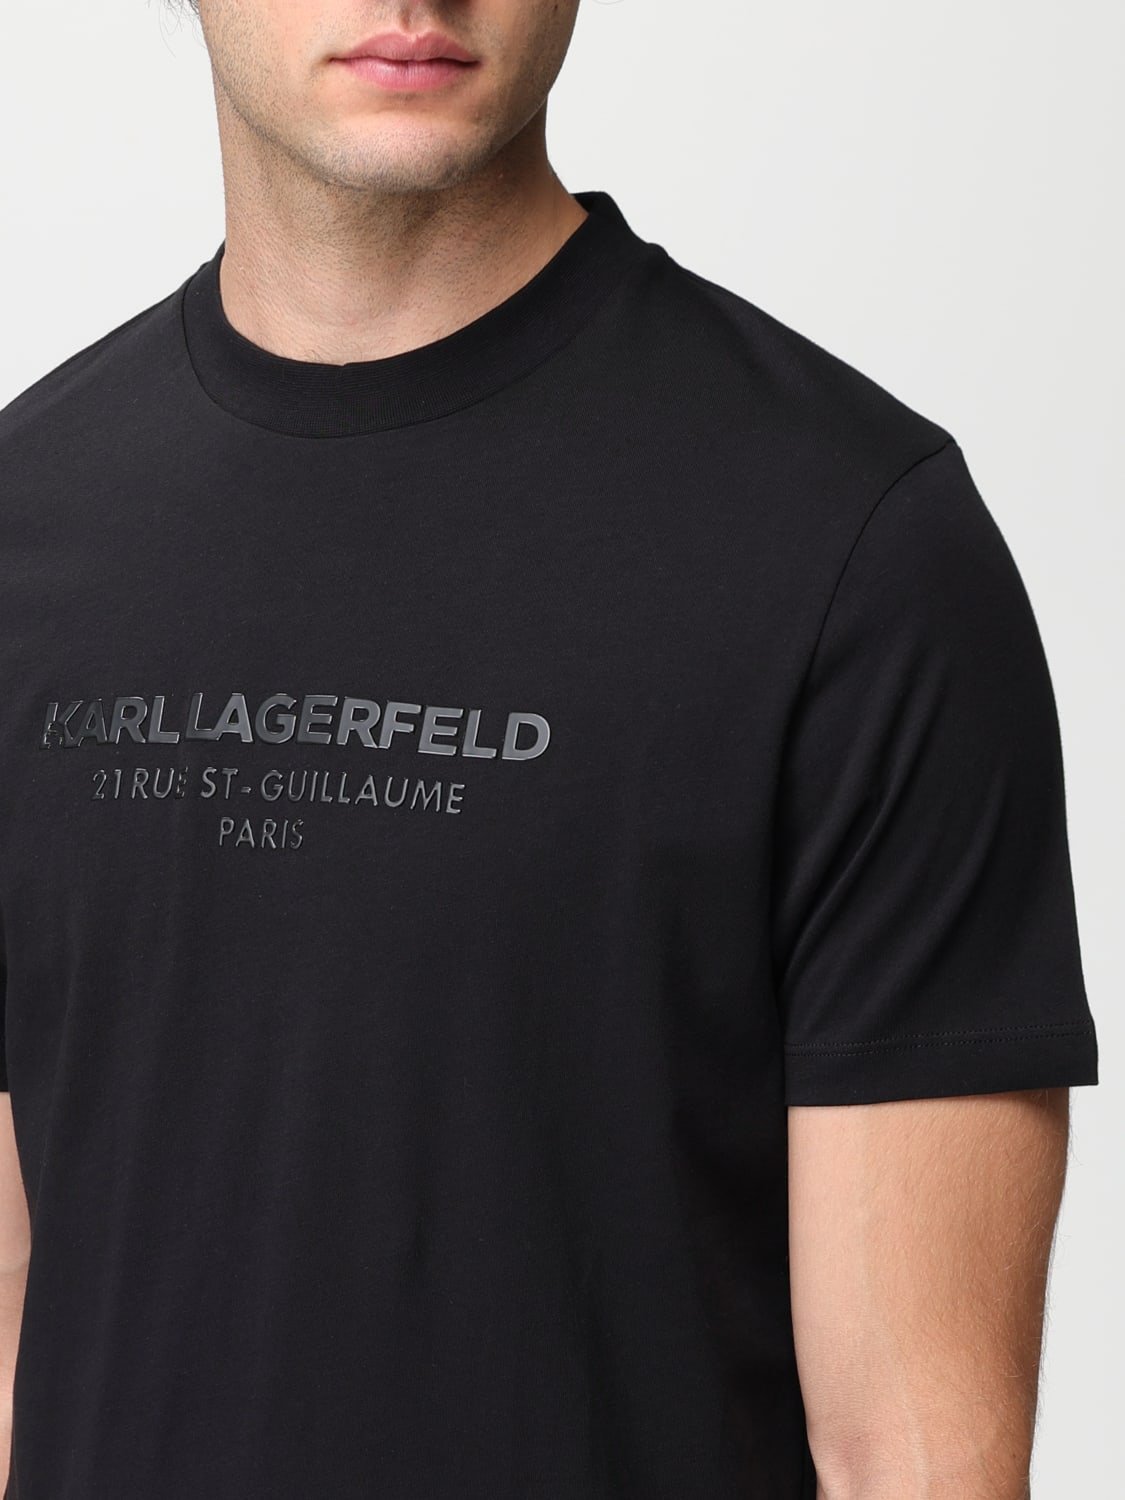 KARL LAGERFELD t-shirt Black for boys